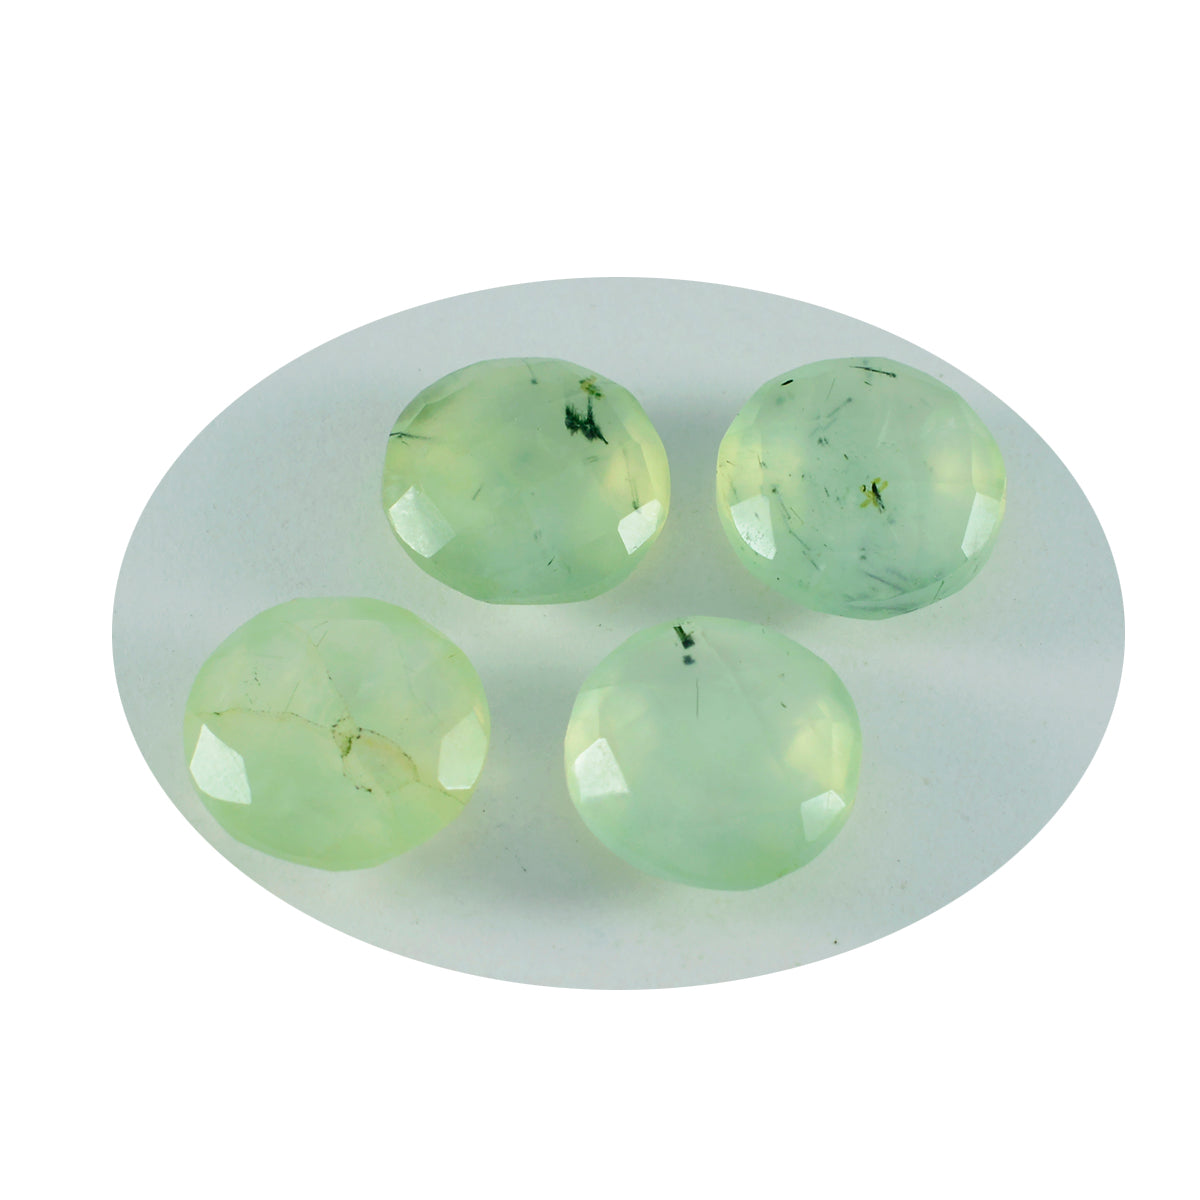 riyogems 1шт зеленый пренит ограненный 15х15 мм круглая форма красивое качество сыпучий драгоценный камень